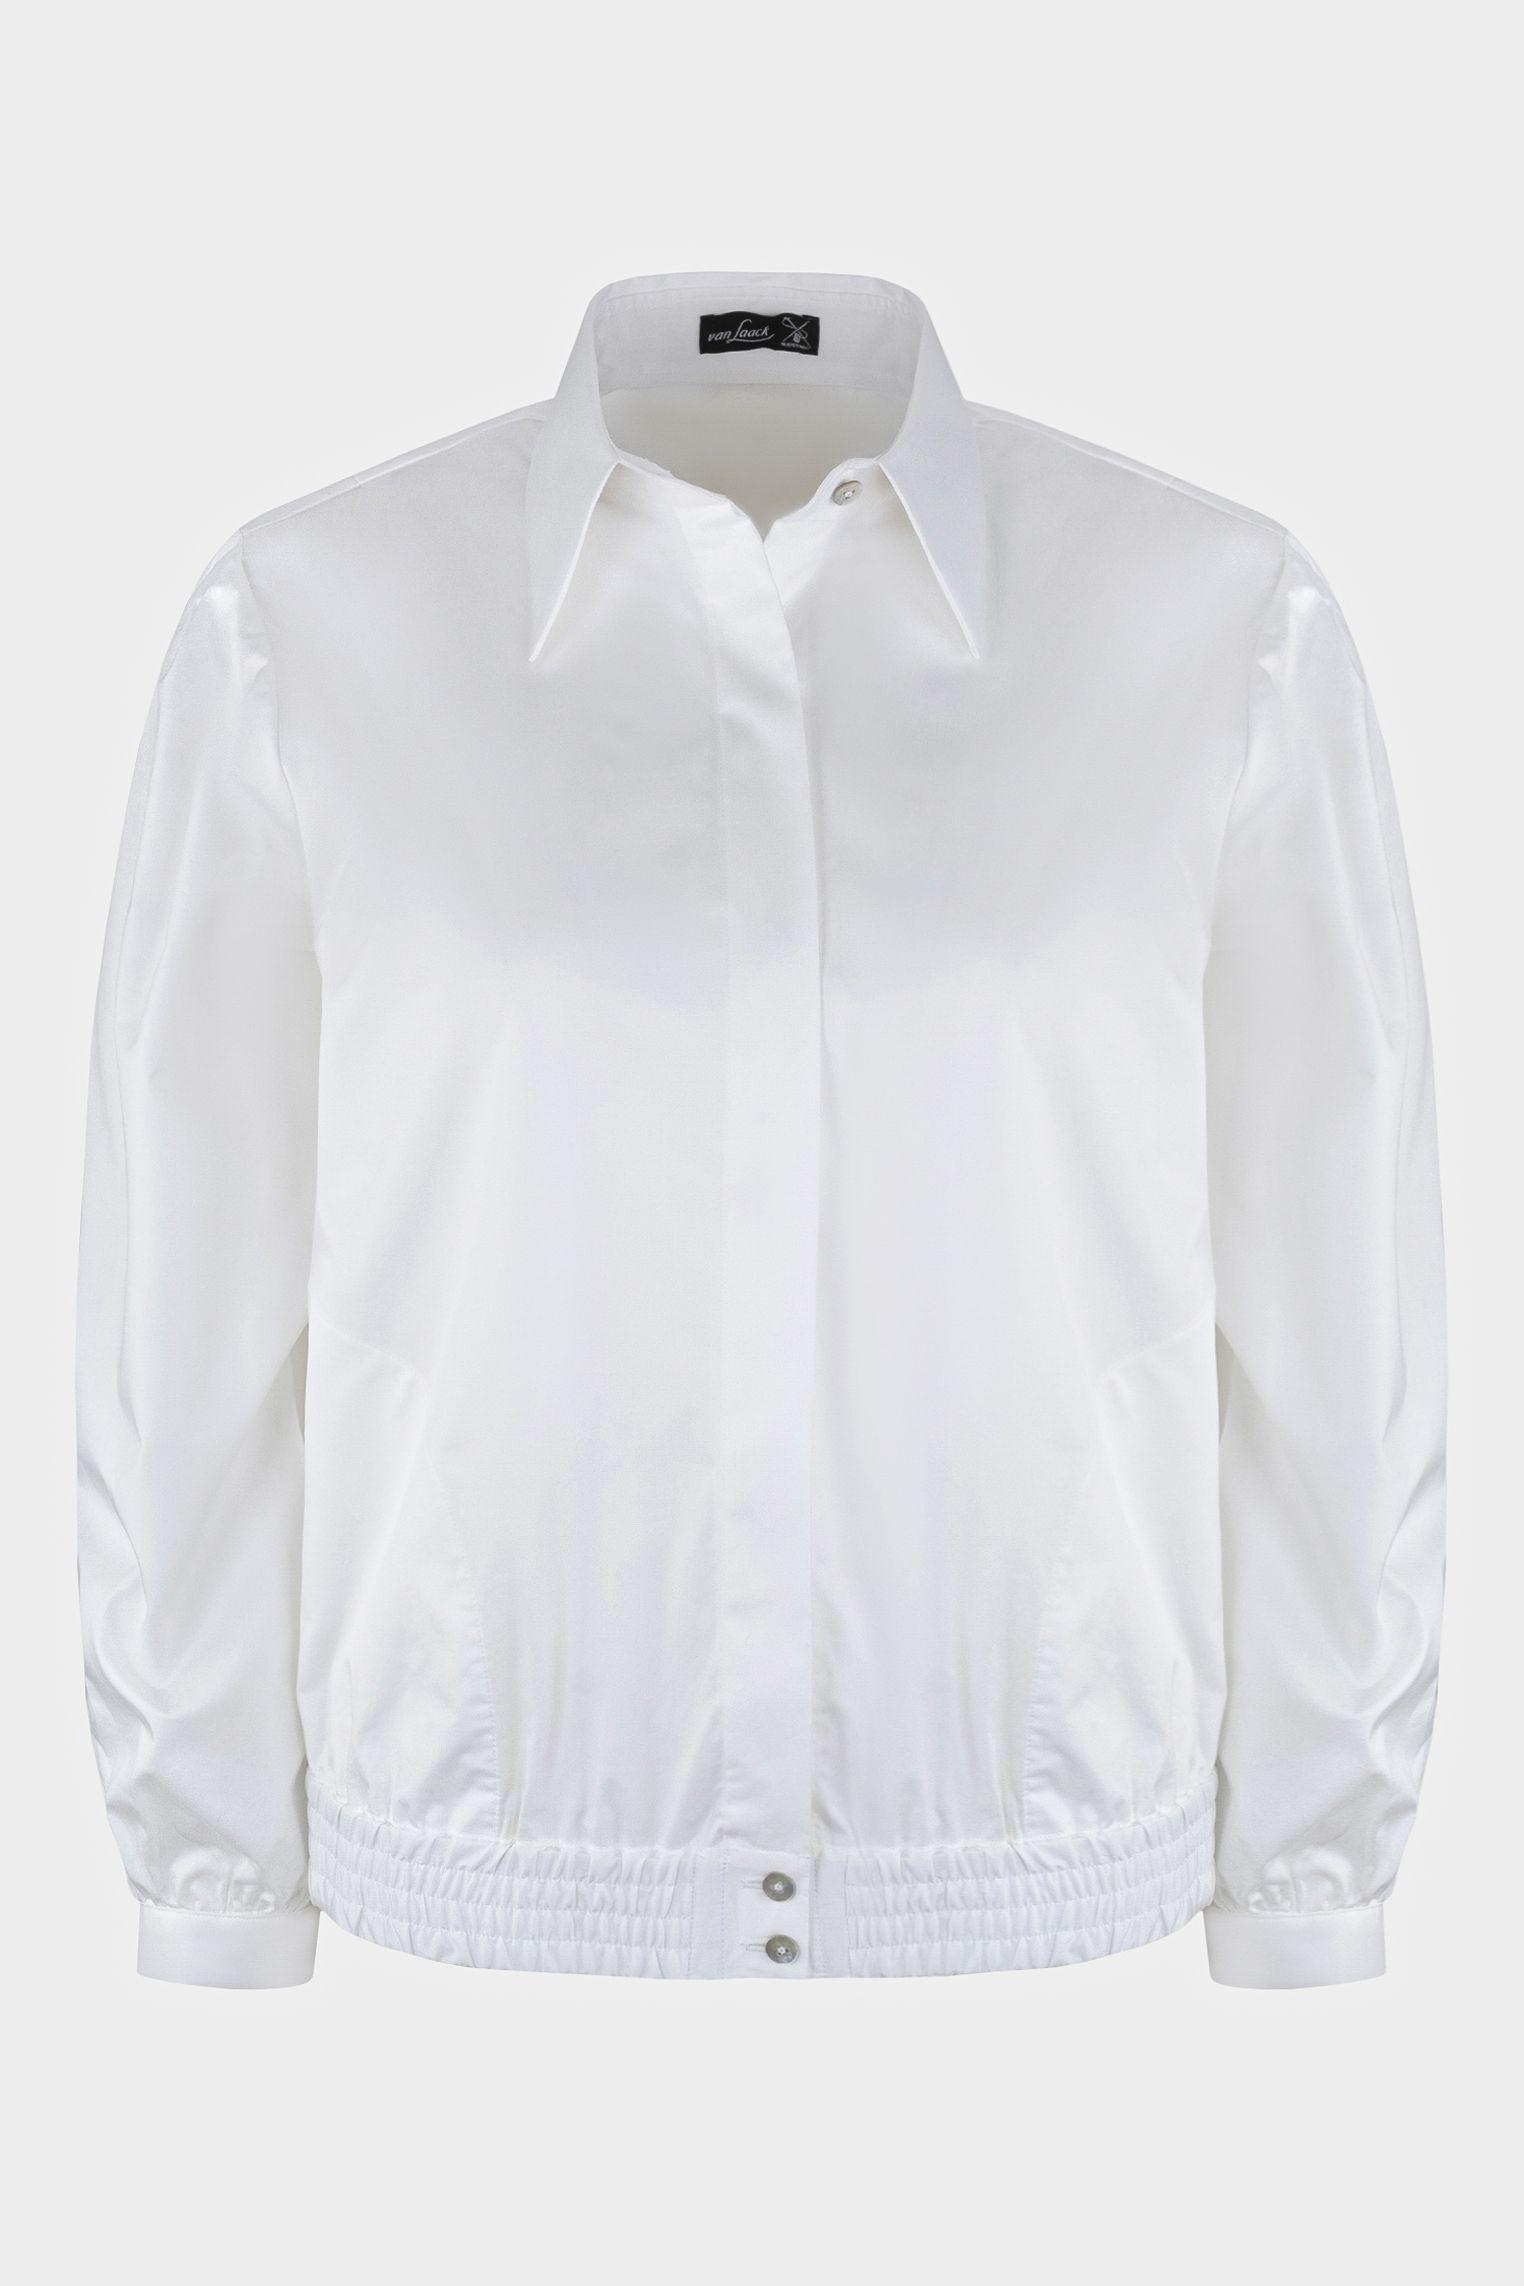 блузка M LETISSA белый M-LETISSA_H00240_000 ,photo 1